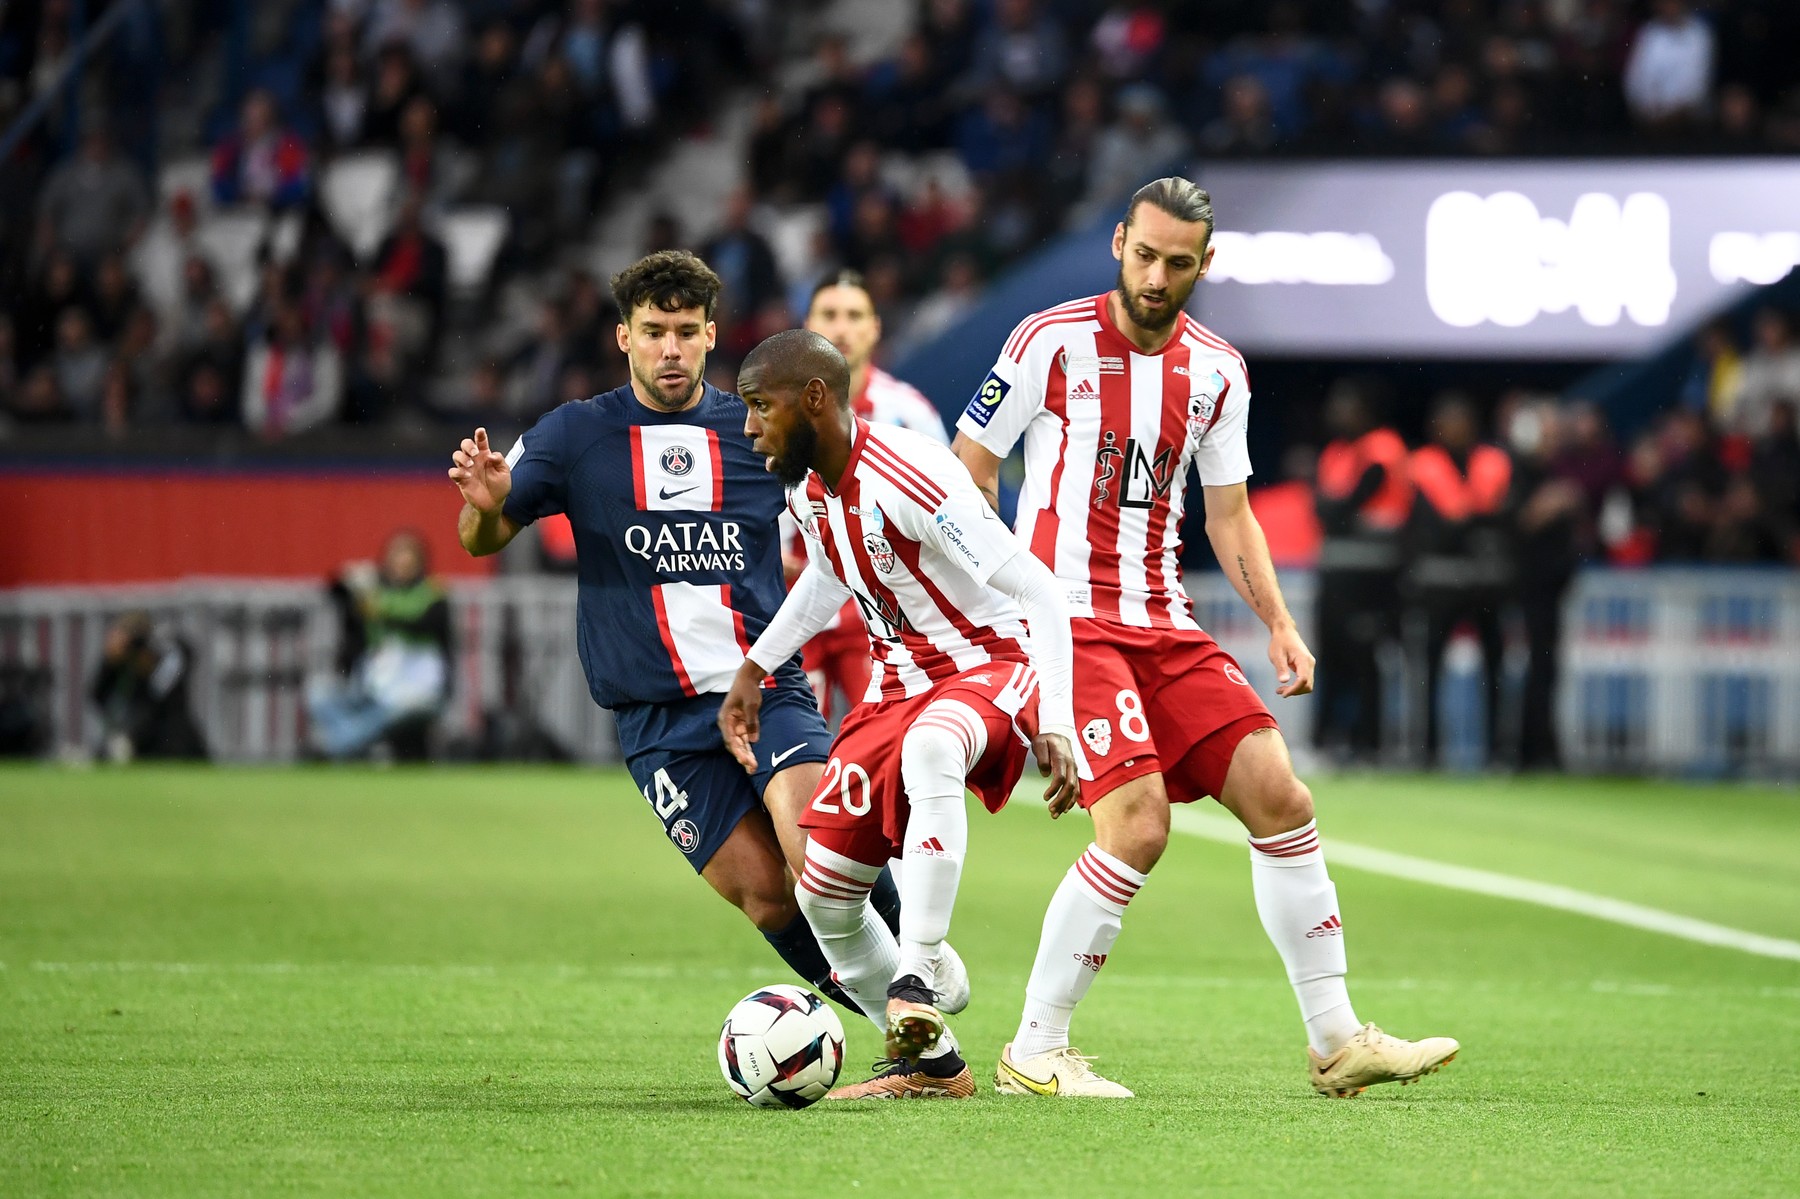 PSG - Ajaccio 1-0, ACUM, pe Digi Sport 3. Fabian Ruiz deschide scorul pentru parizieni